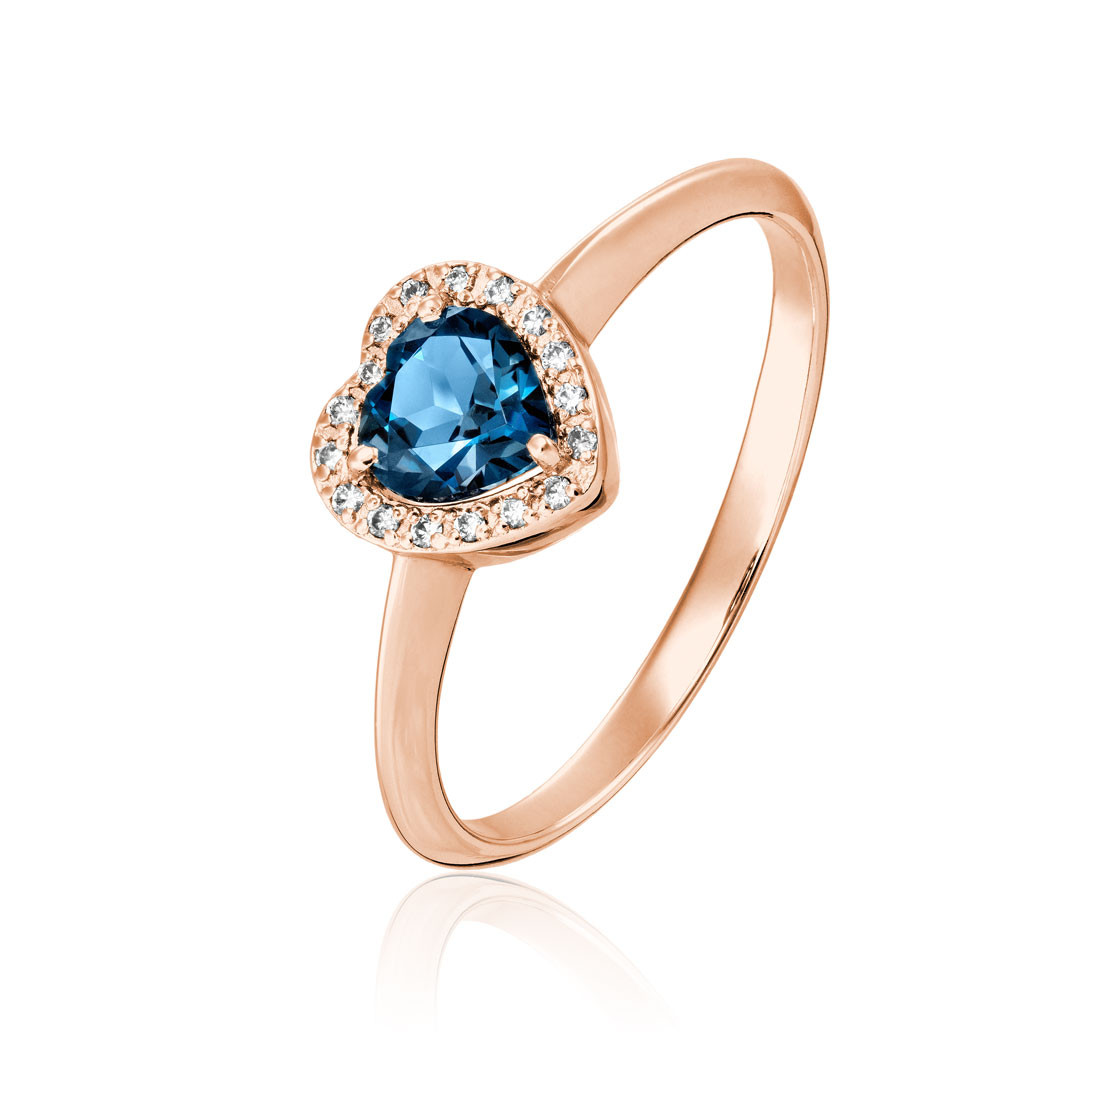 Prsteň Blithe, ružové zlato, diamant, modrý topás.